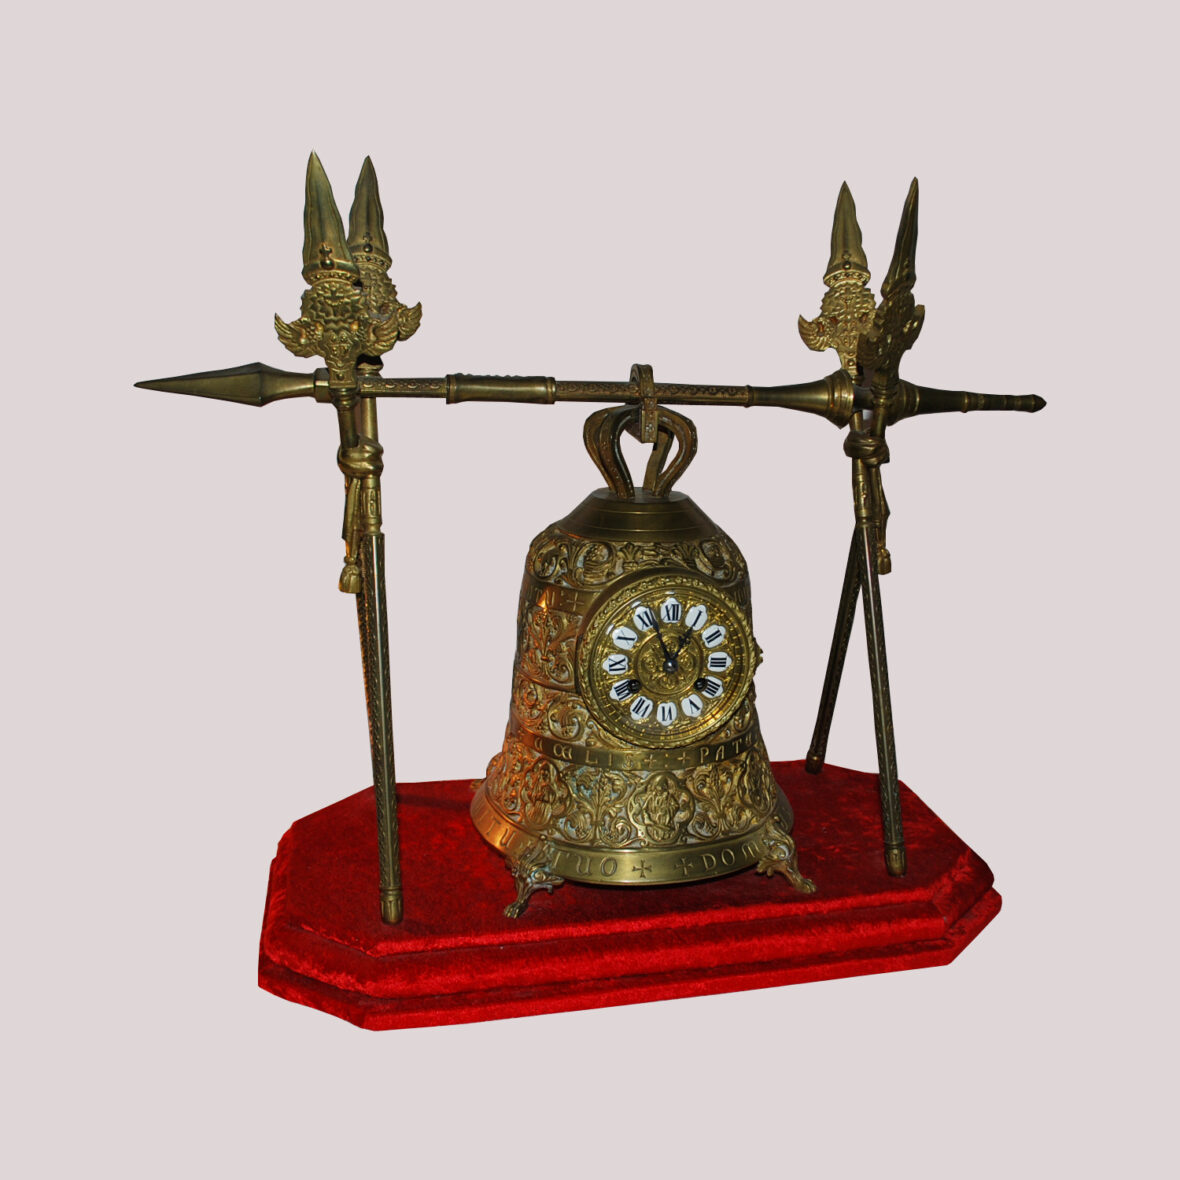 Pendule en bronze doré représentant une cloche tenue par des lances, le cadran à médaillon émaillé blanc et chiffres romains. Socle en velours rouge. De style gothique.